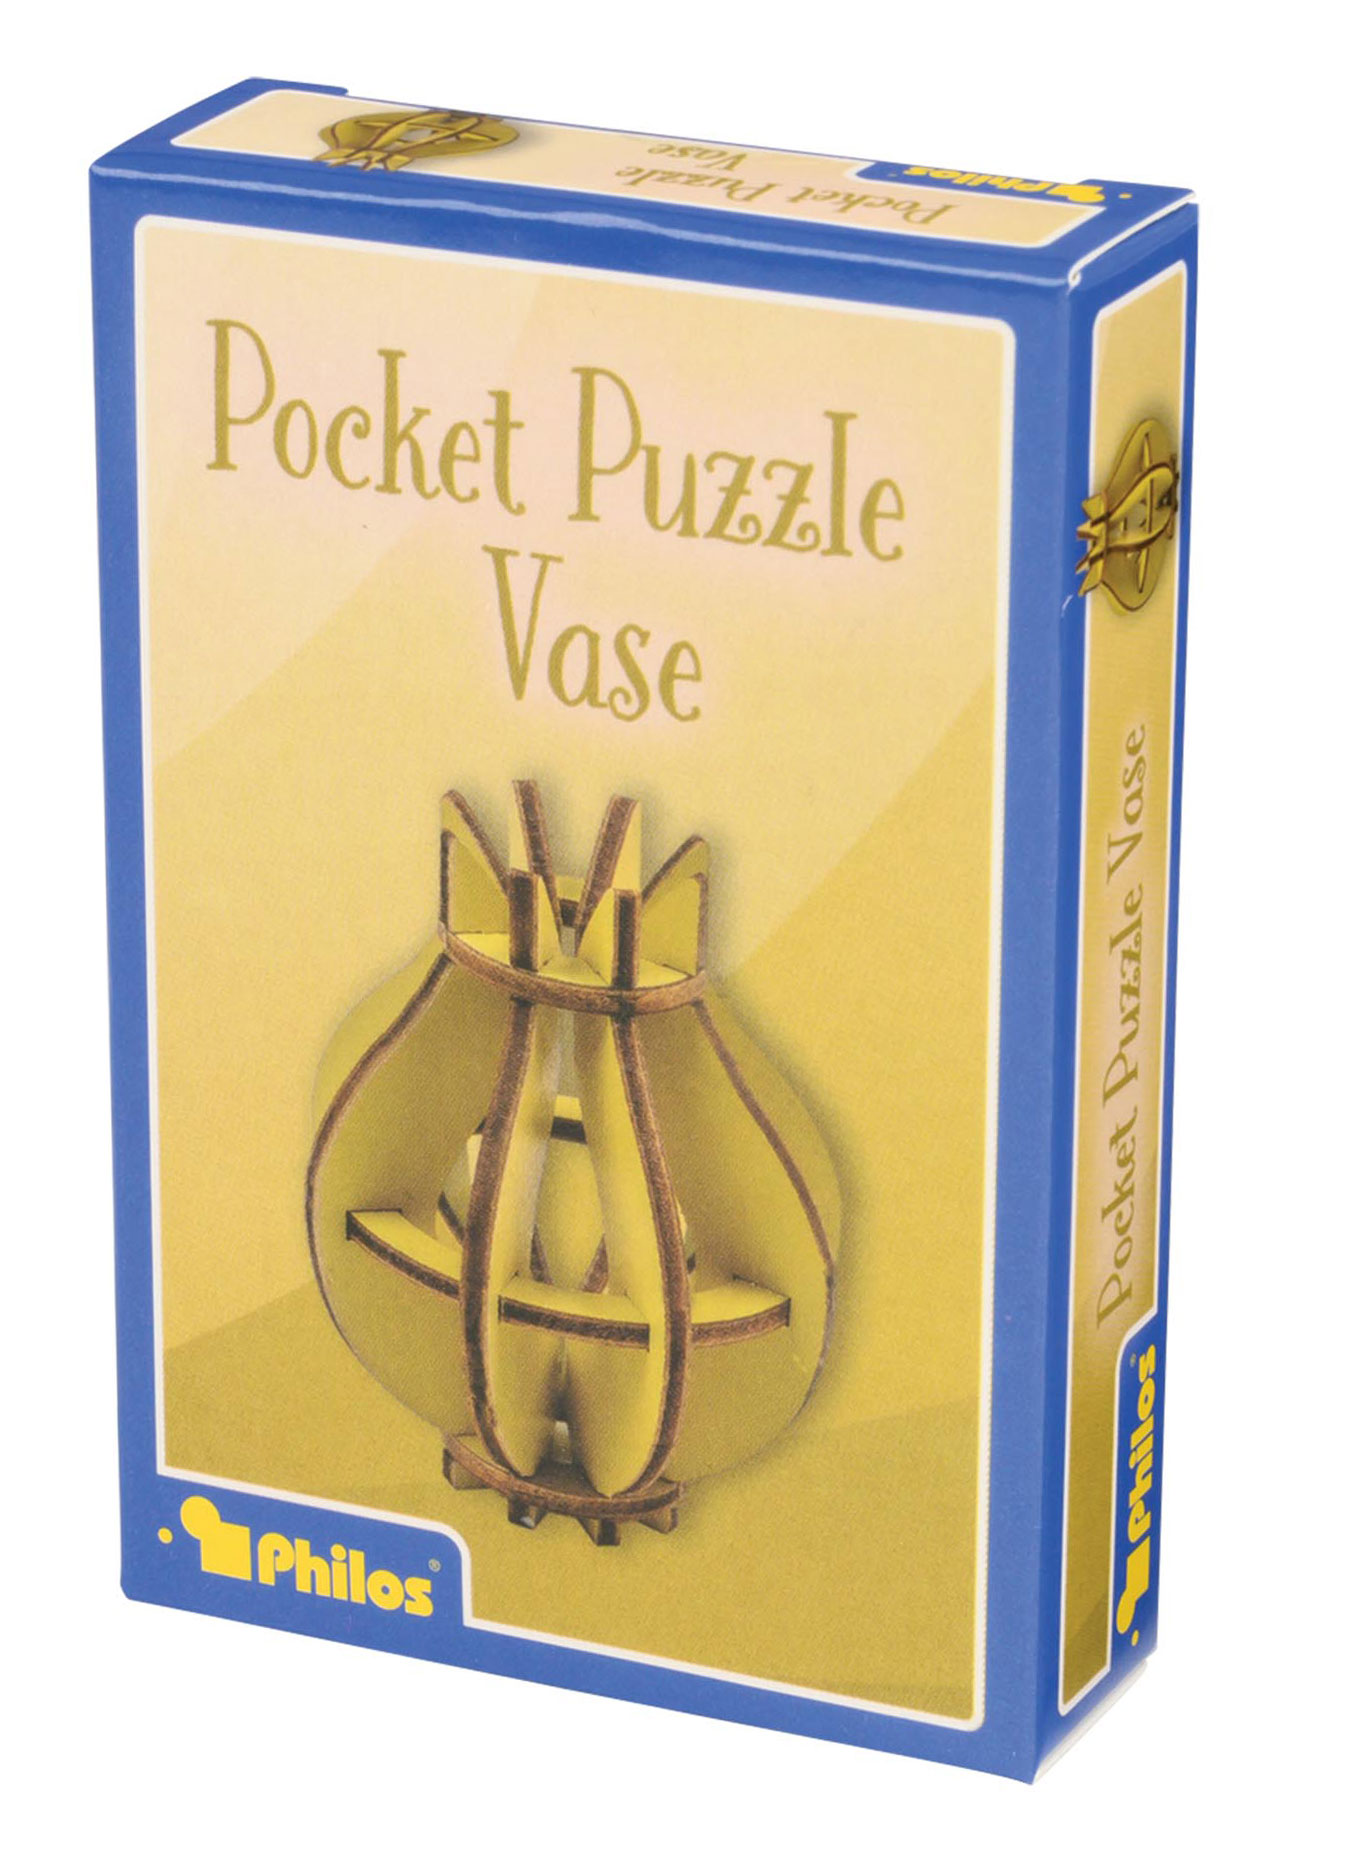 3D Pocket Puzzle, Vase